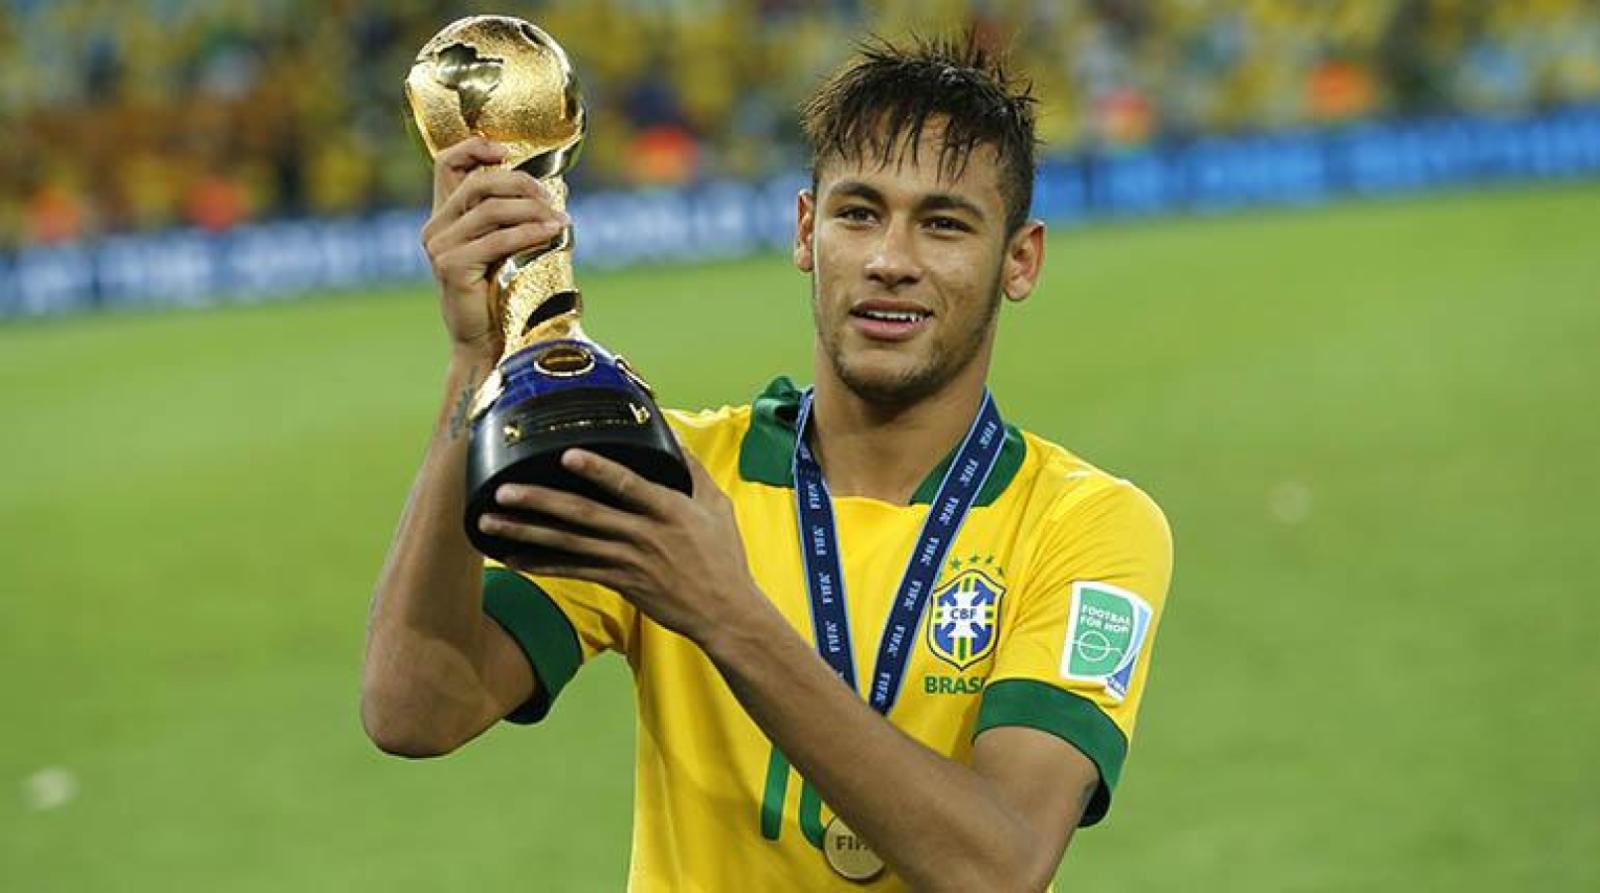 Imagen La Copa Confederaciones 2013 parecía ser el augurio de una época de gloria para Neymar y Brasil que no llegó.